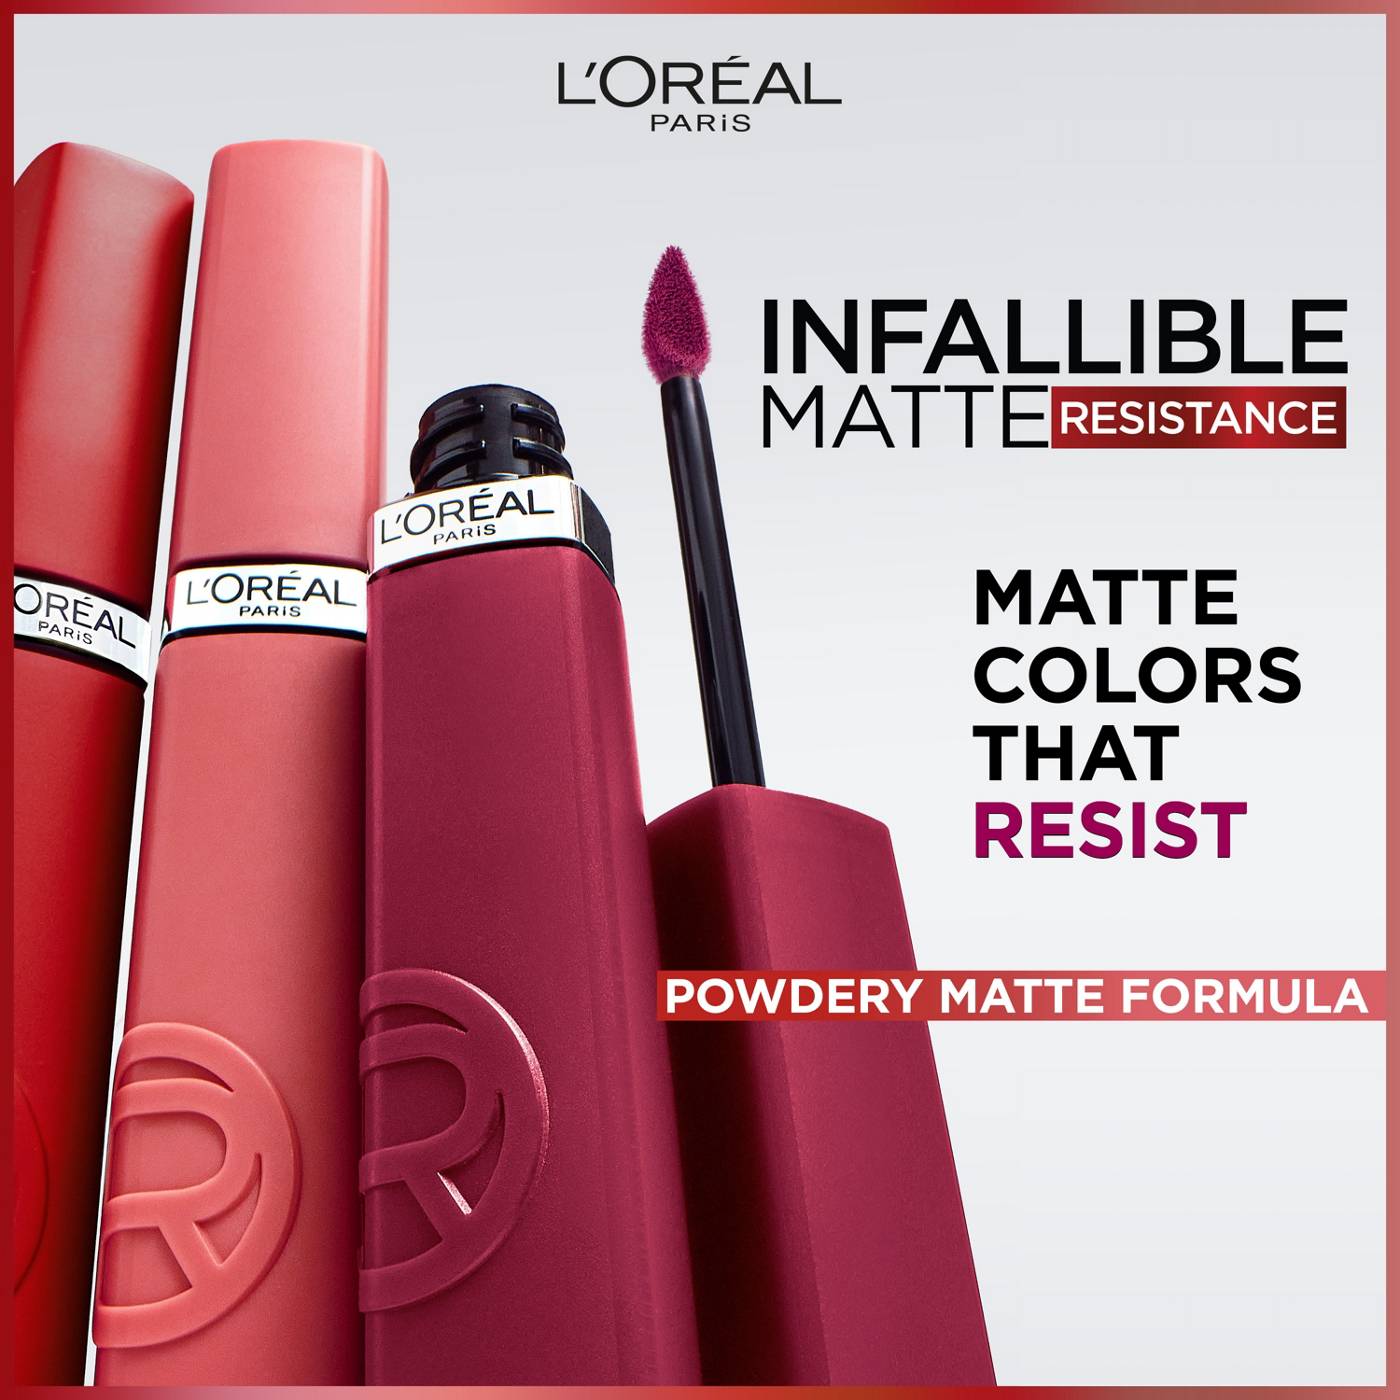 L'Oréal Paris Infallible Le Matte Resistance Liquid Lipstick - Proposal; image 3 of 6